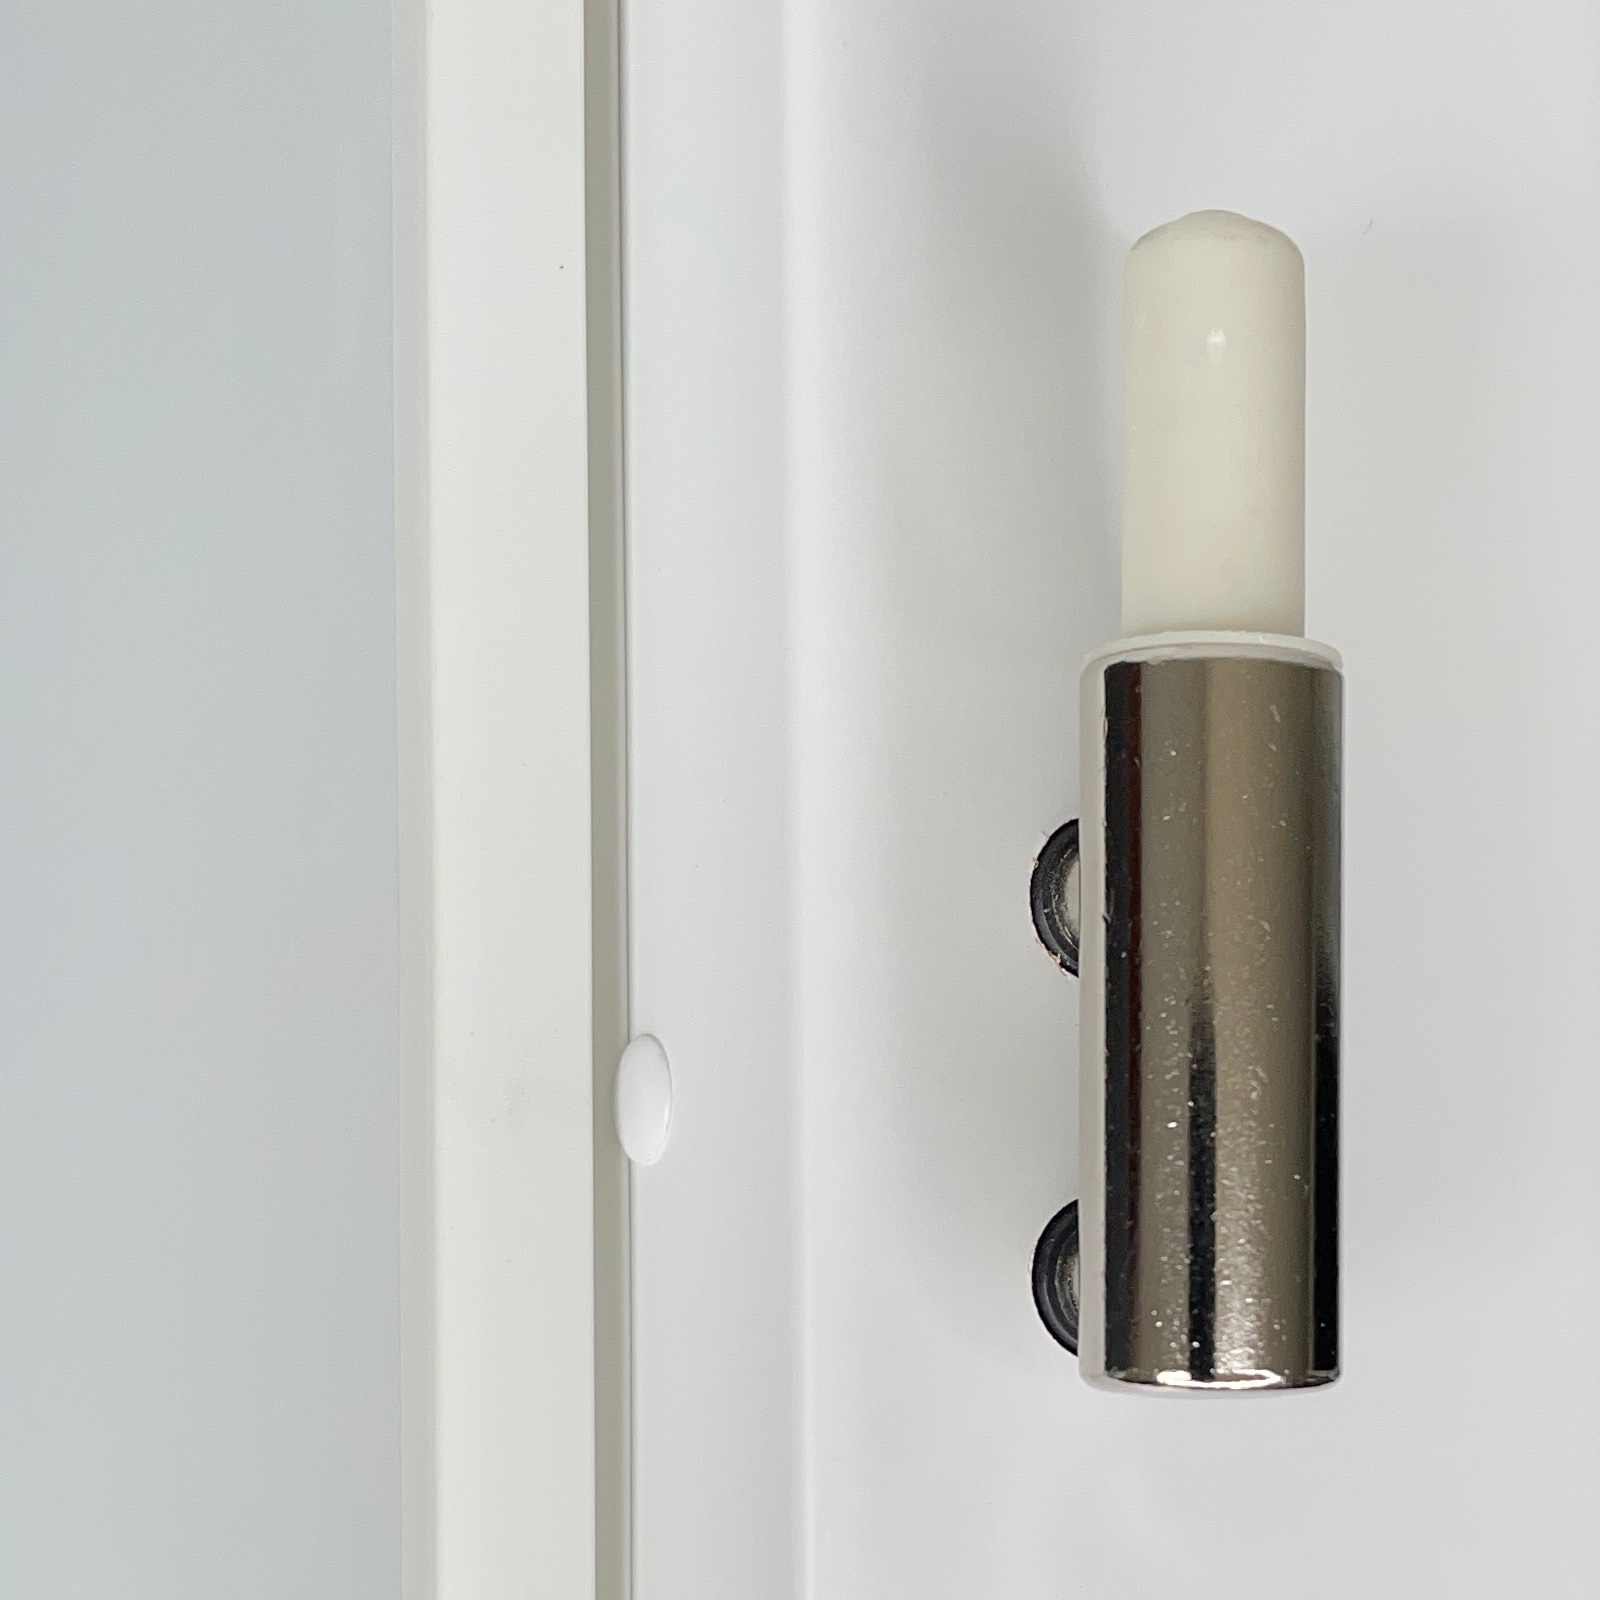 Zimmertür mit Zarge und Lichtausschnitt brillant-weiß 4 Rillen Designkante - Modell Designtür Q43LAM